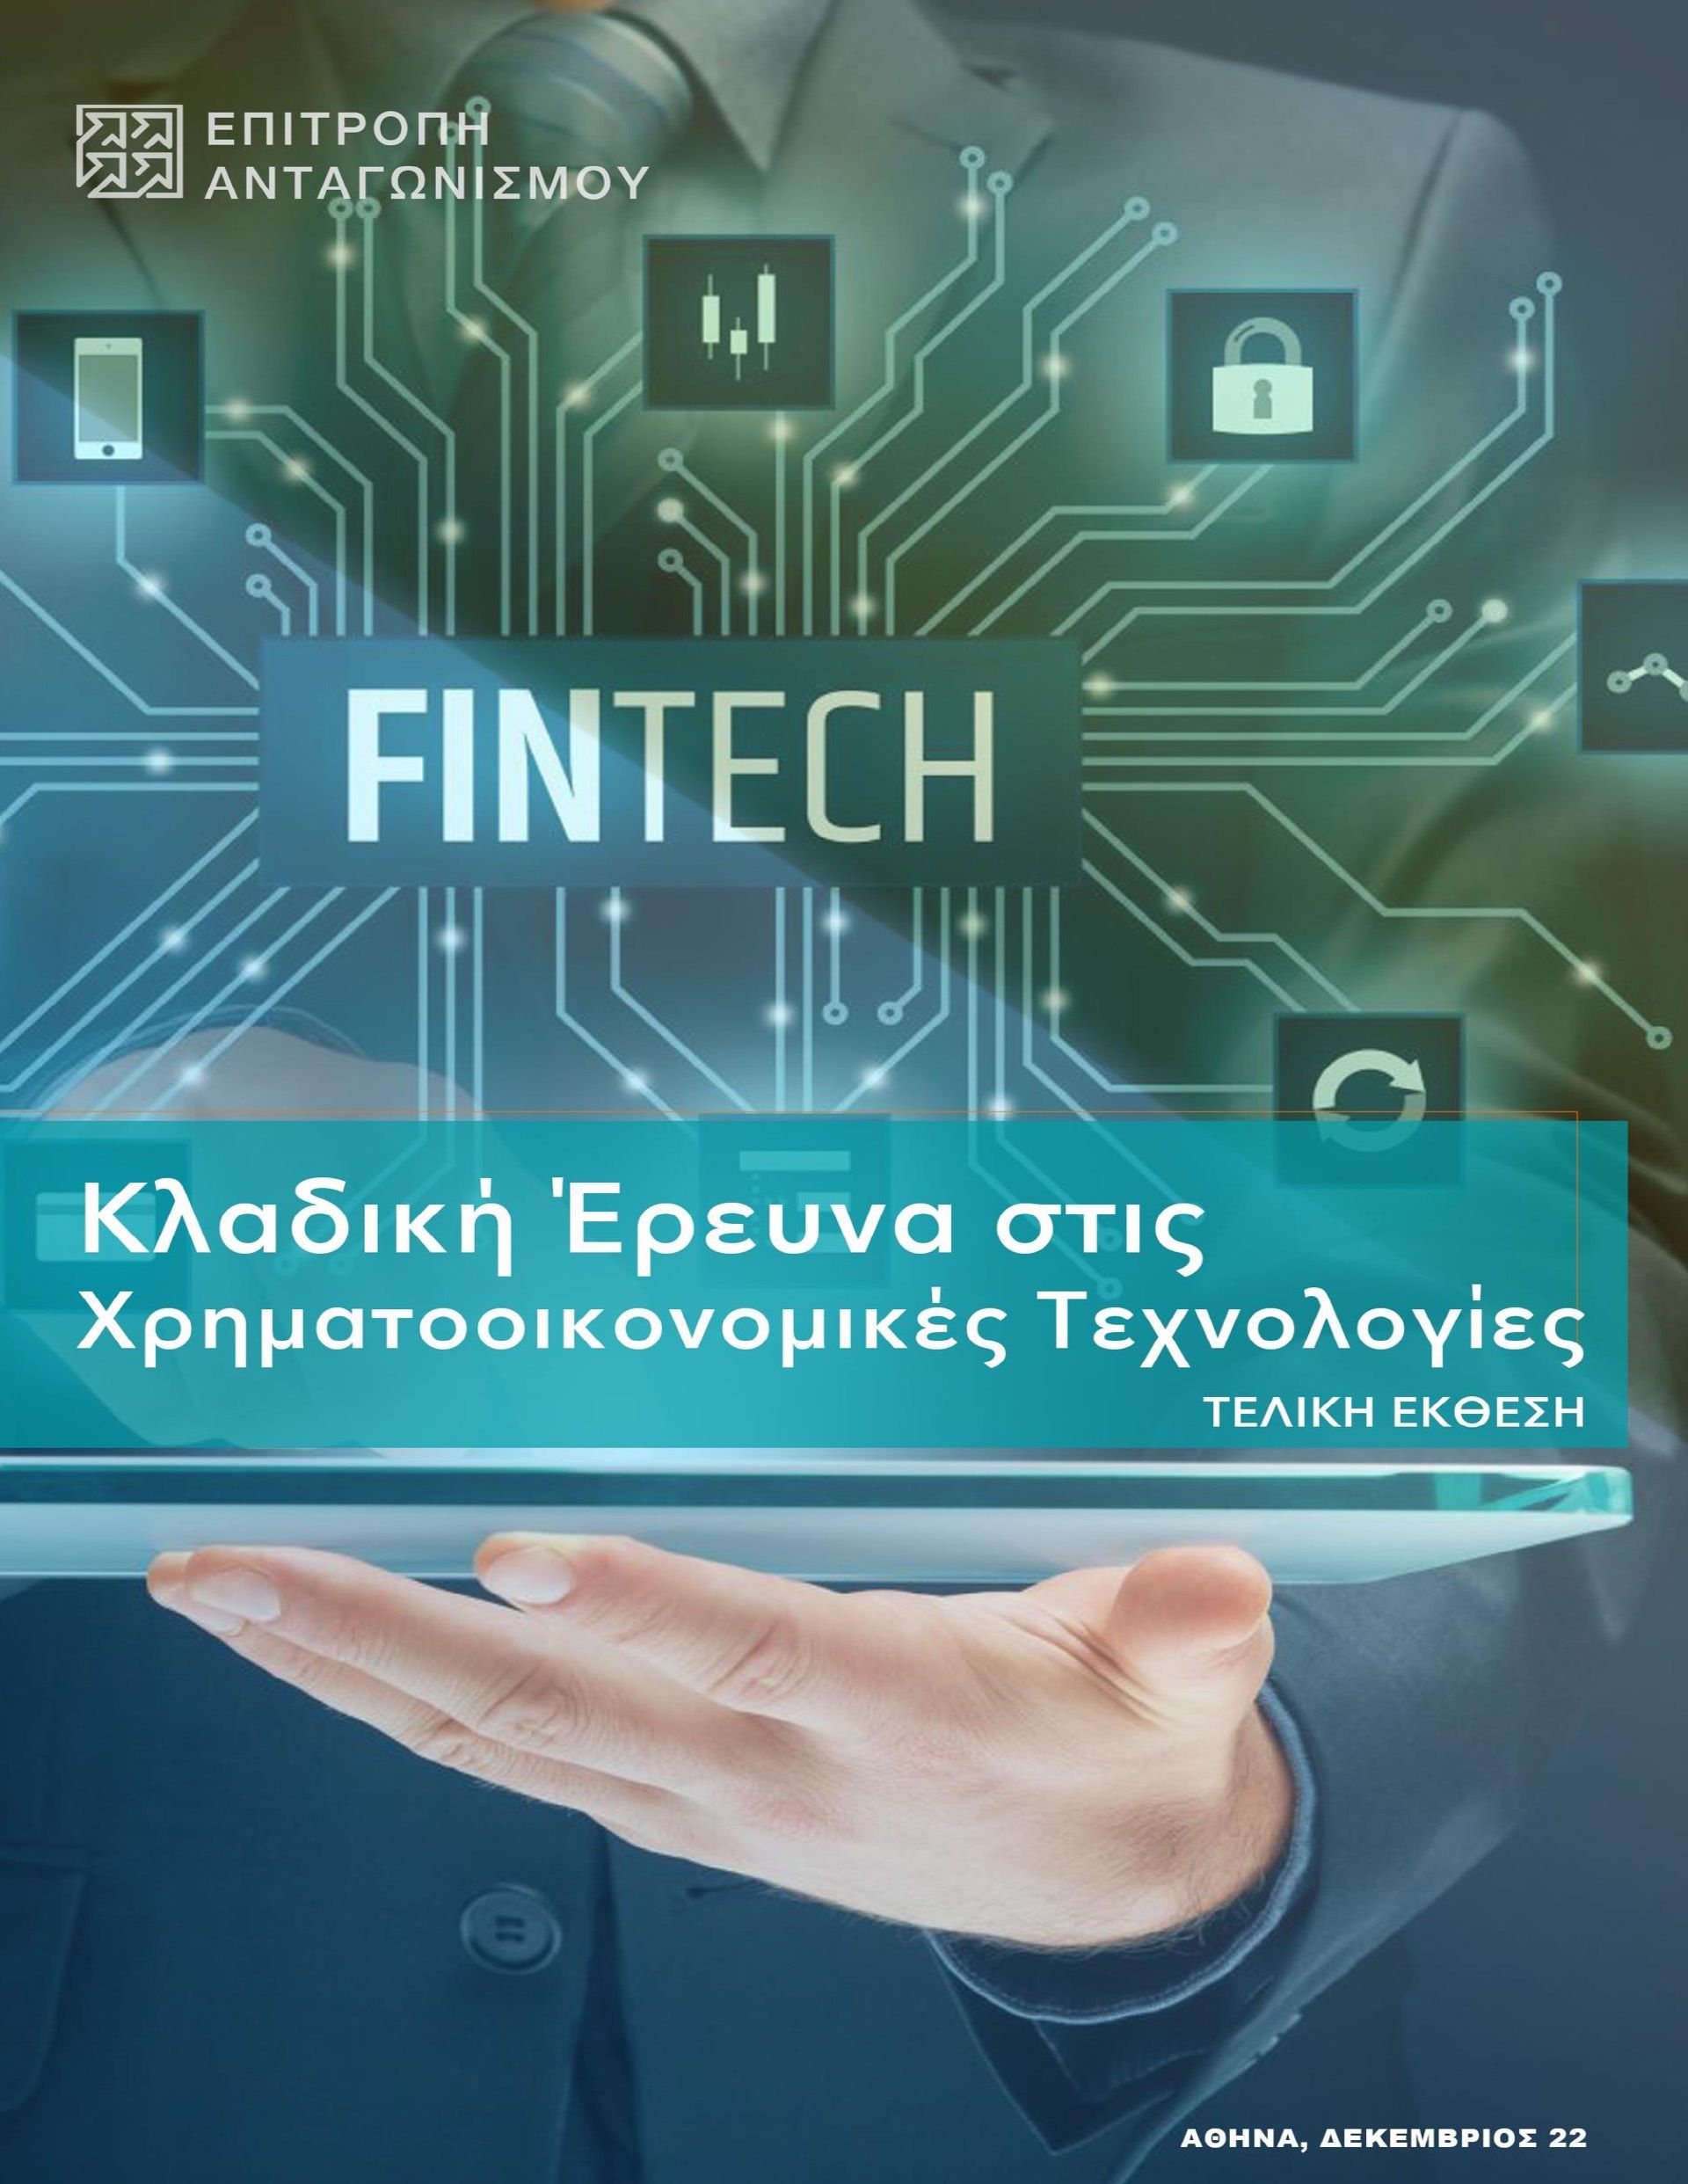 Τελική Έκθεση κλαδικής έρευνας στις Χρηματοοικονομικές Τεχνολογίες (Fintech)